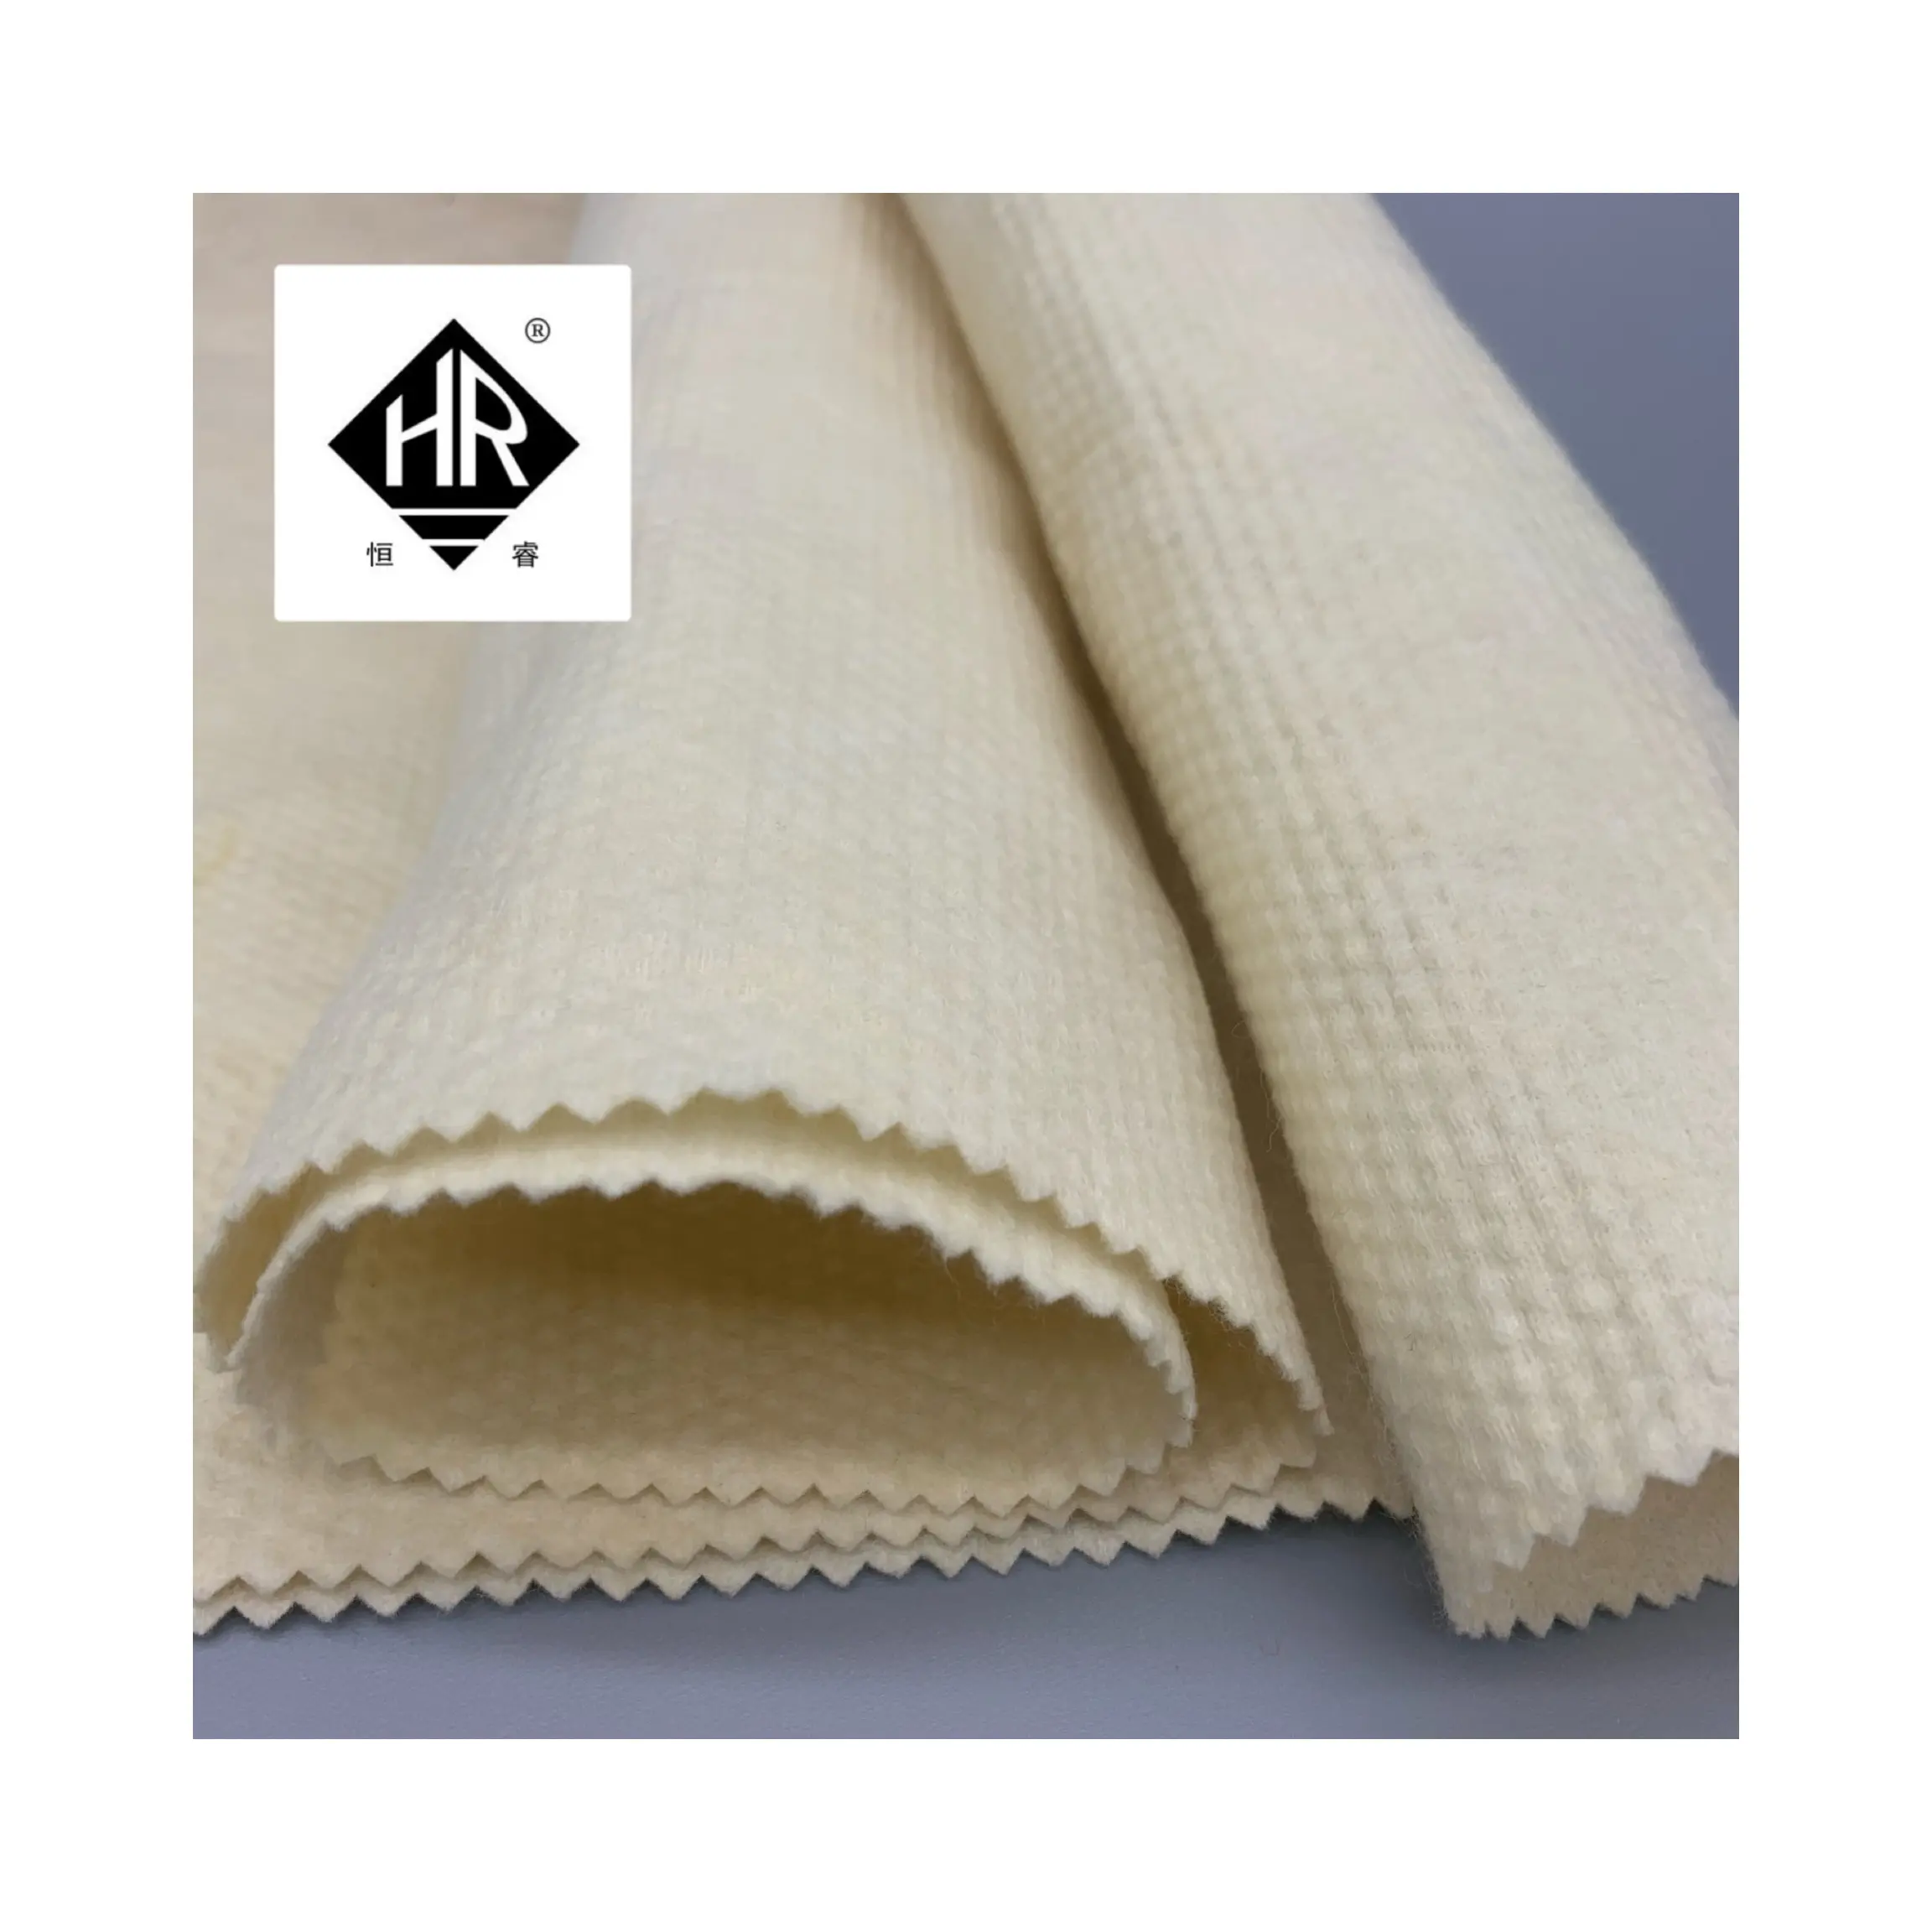 Insulasi panas kain arfelt nomex/kain kevlar bukan tenunan untuk pakaian kerja